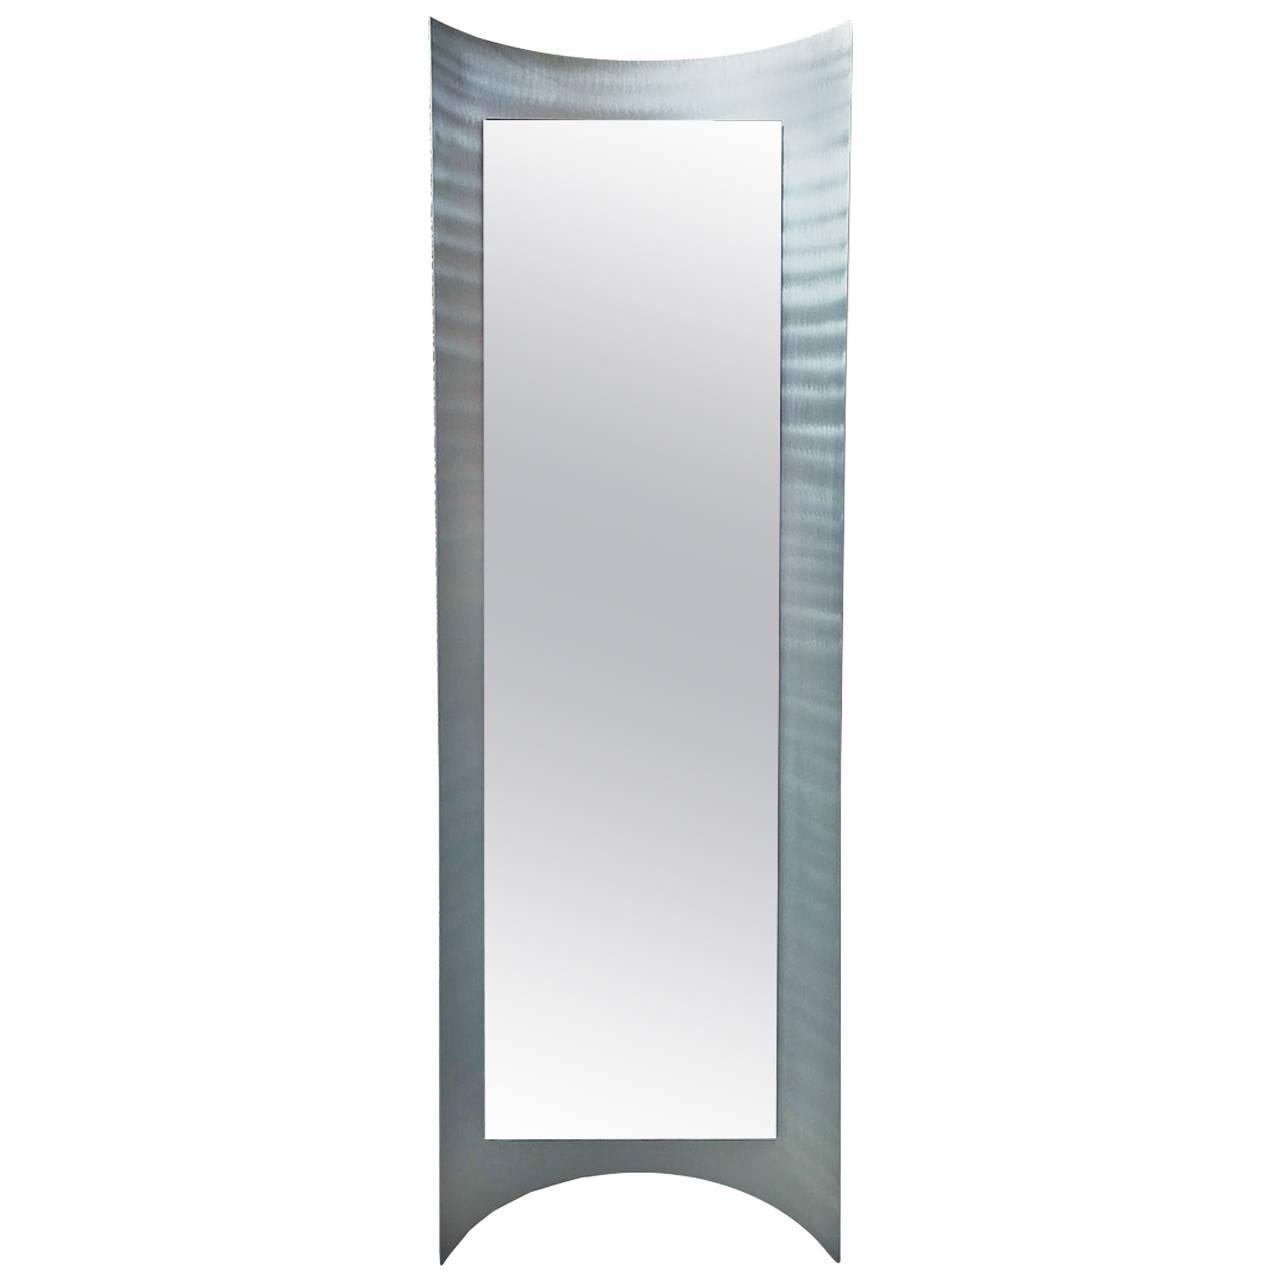 Rare Mirror in Curved Aluminum, Designed by Paolo Rizzatto